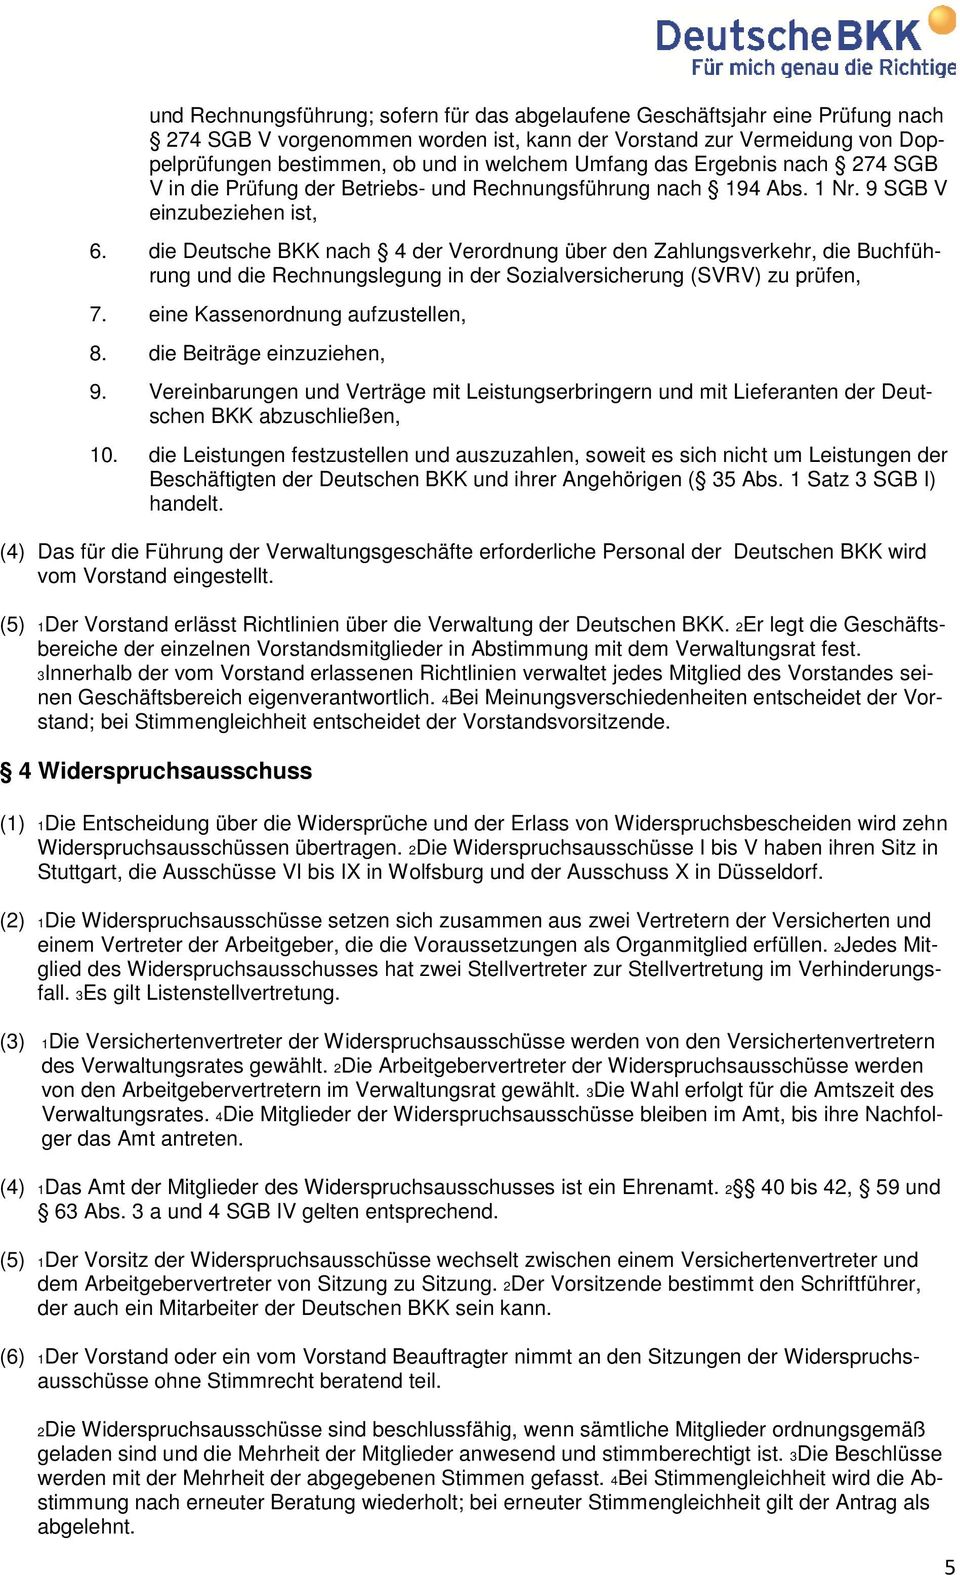 die Deutsche BKK nach 4 der Verordnung über den Zahlungsverkehr, die Buchführung und die Rechnungslegung in der Sozialversicherung (SVRV) zu prüfen, 7. eine Kassenordnung aufzustellen, 8.